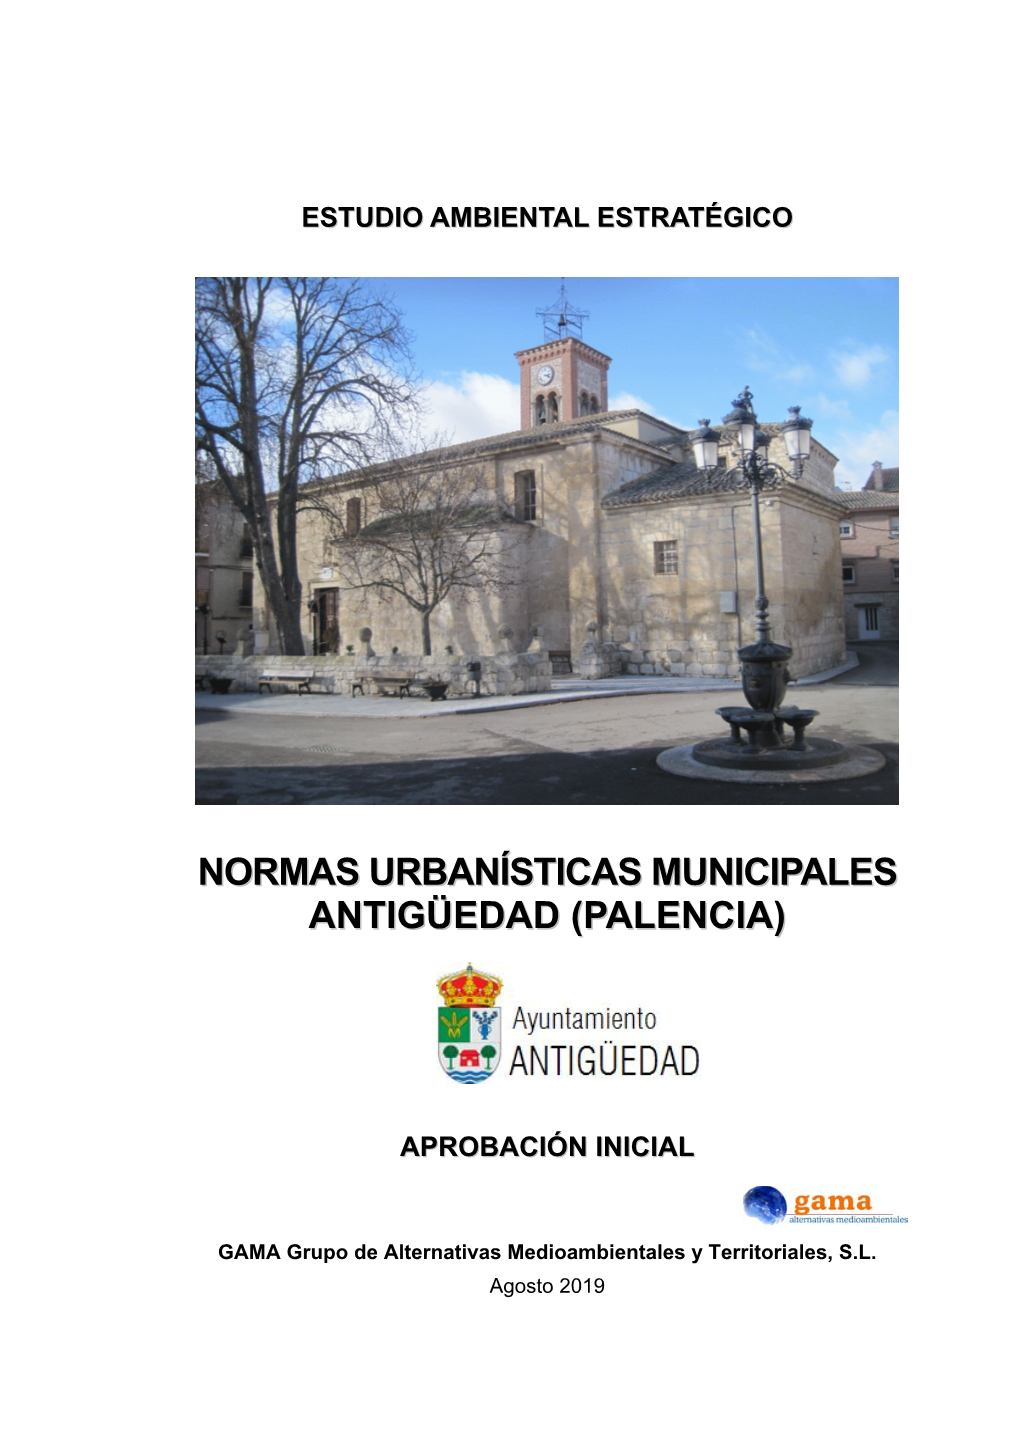 Normas Urbanísticas Municipales Antigüedad (Palencia)